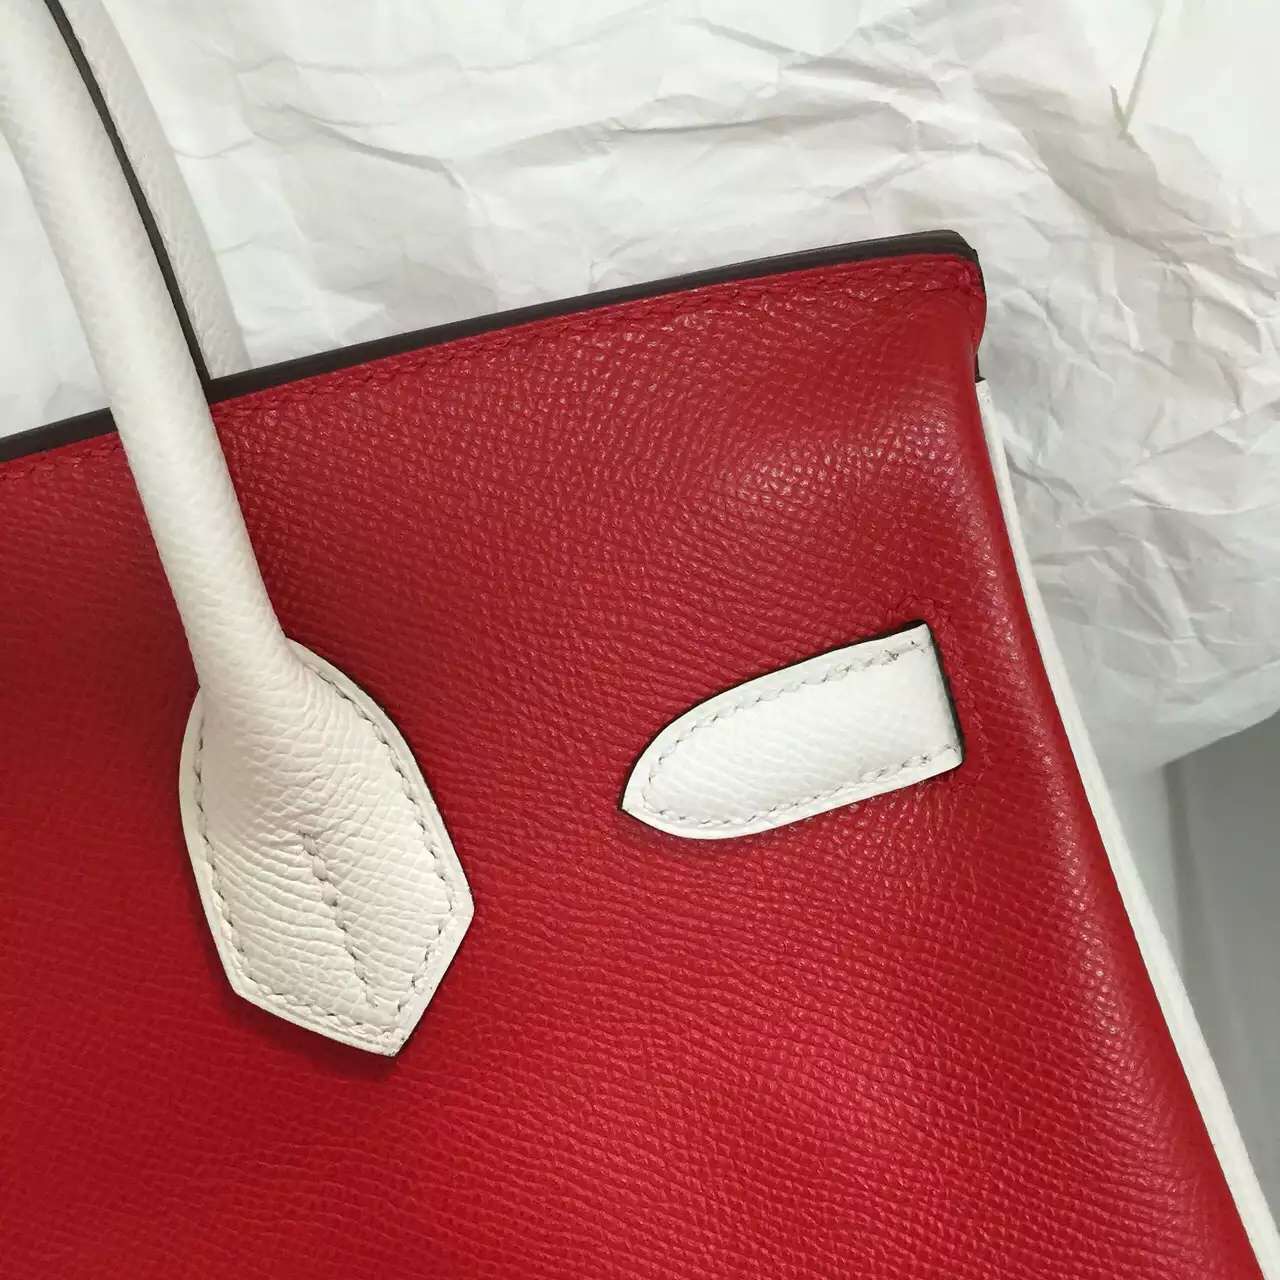 Hermes 7K Blue Saphir/Q5 Red/White Epsom Leather Birkin 30CM Gold Hardware Handbag